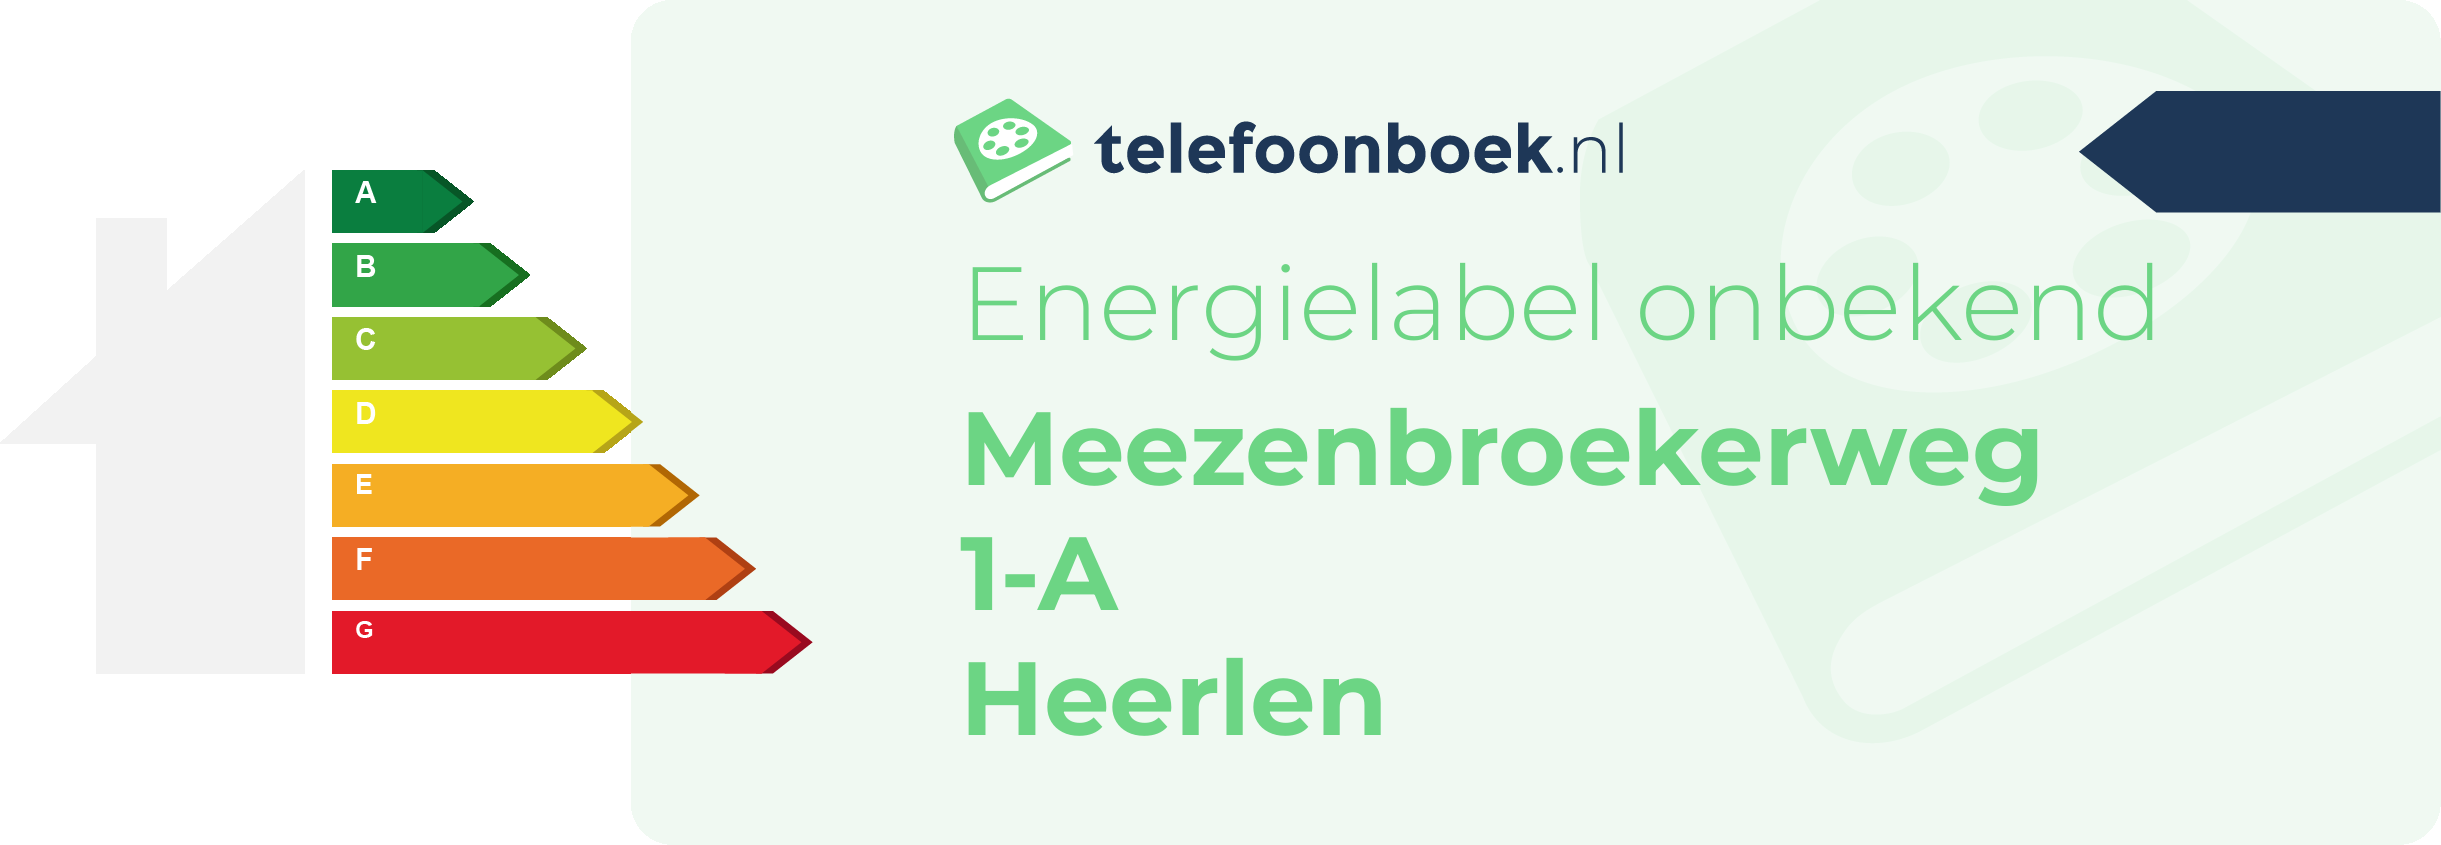 Energielabel Meezenbroekerweg 1-A Heerlen